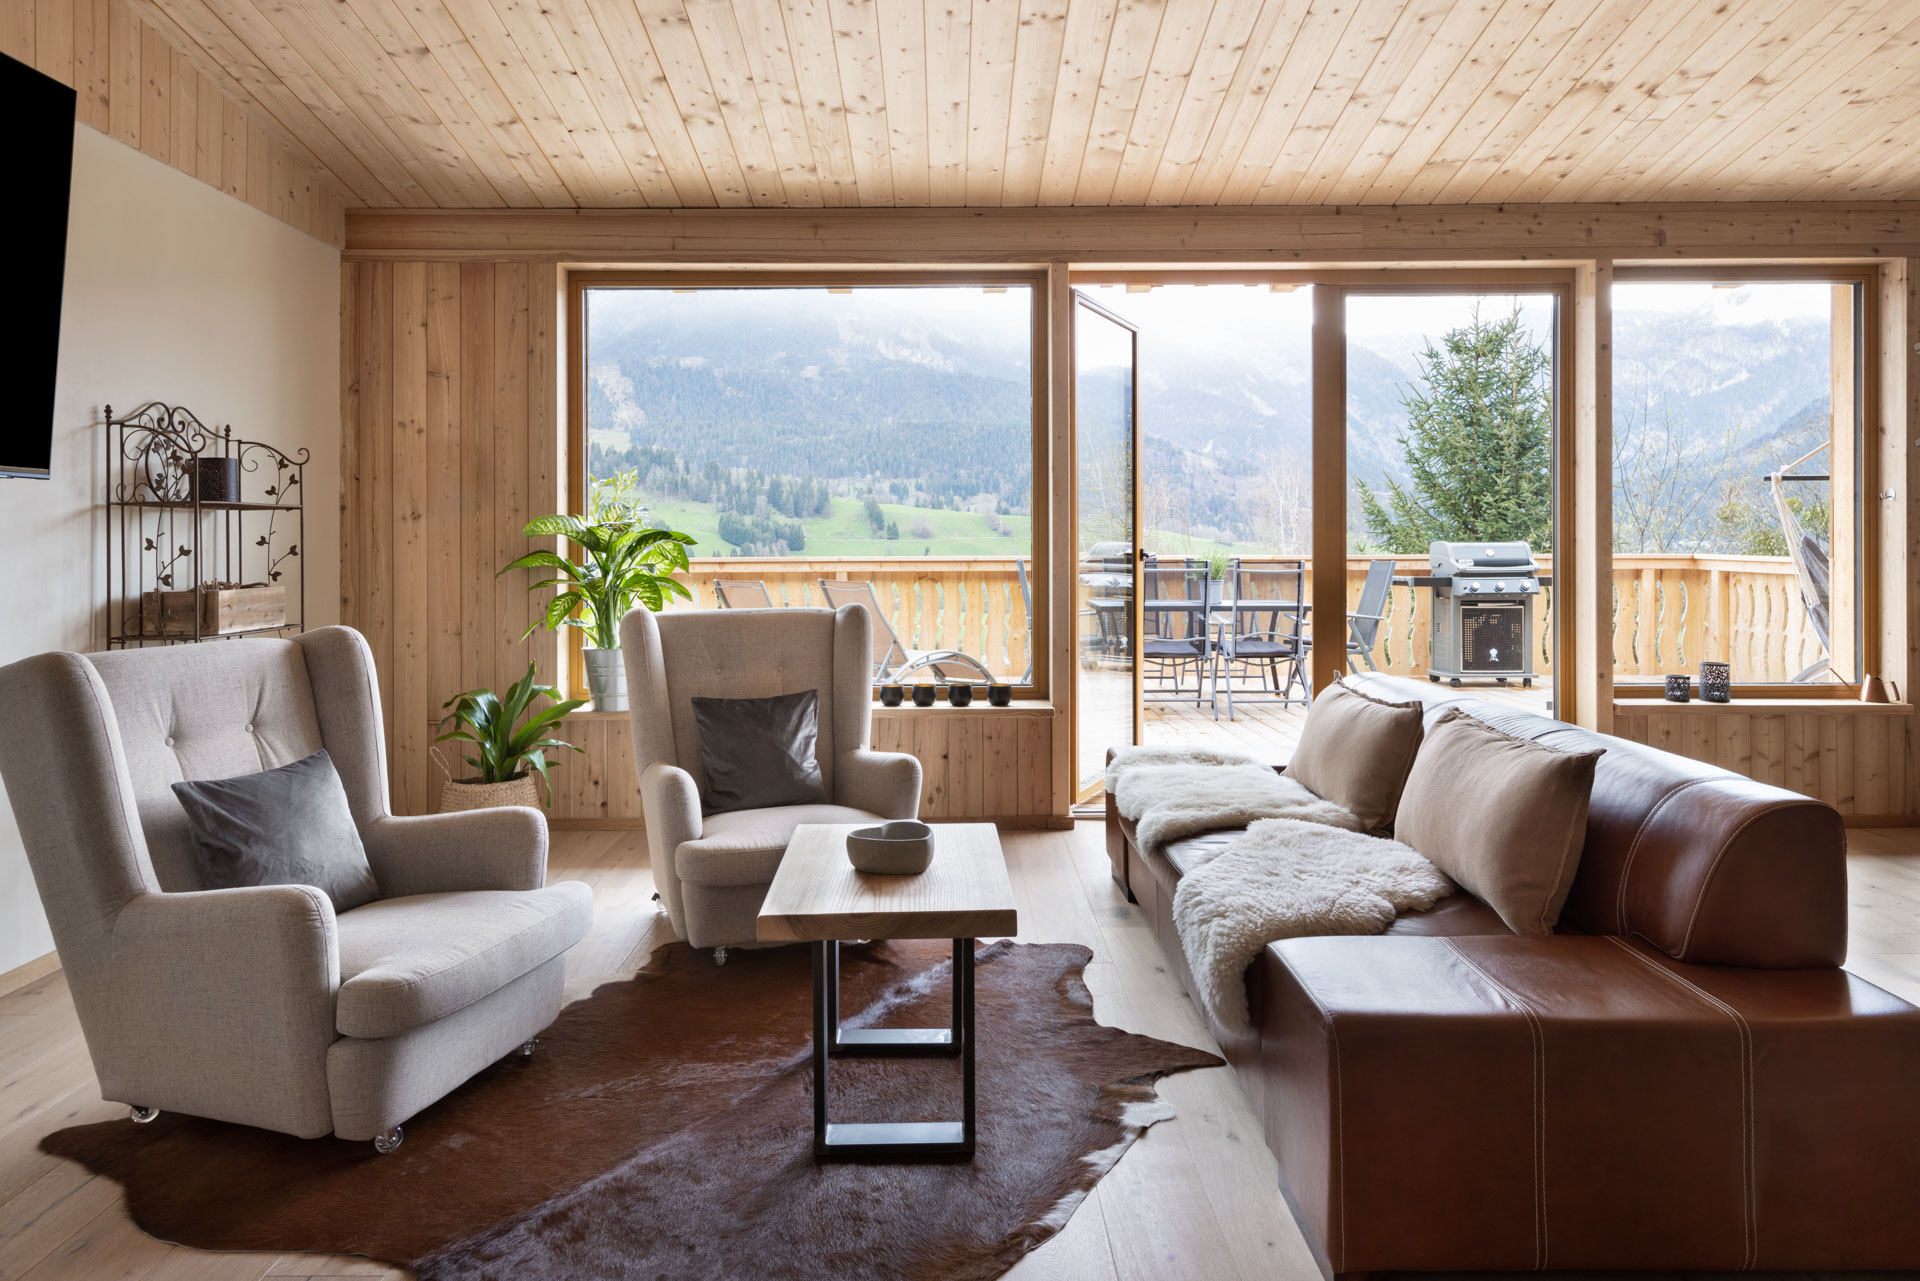 Wohnküche in der Ferienwohnung mit Terrasse